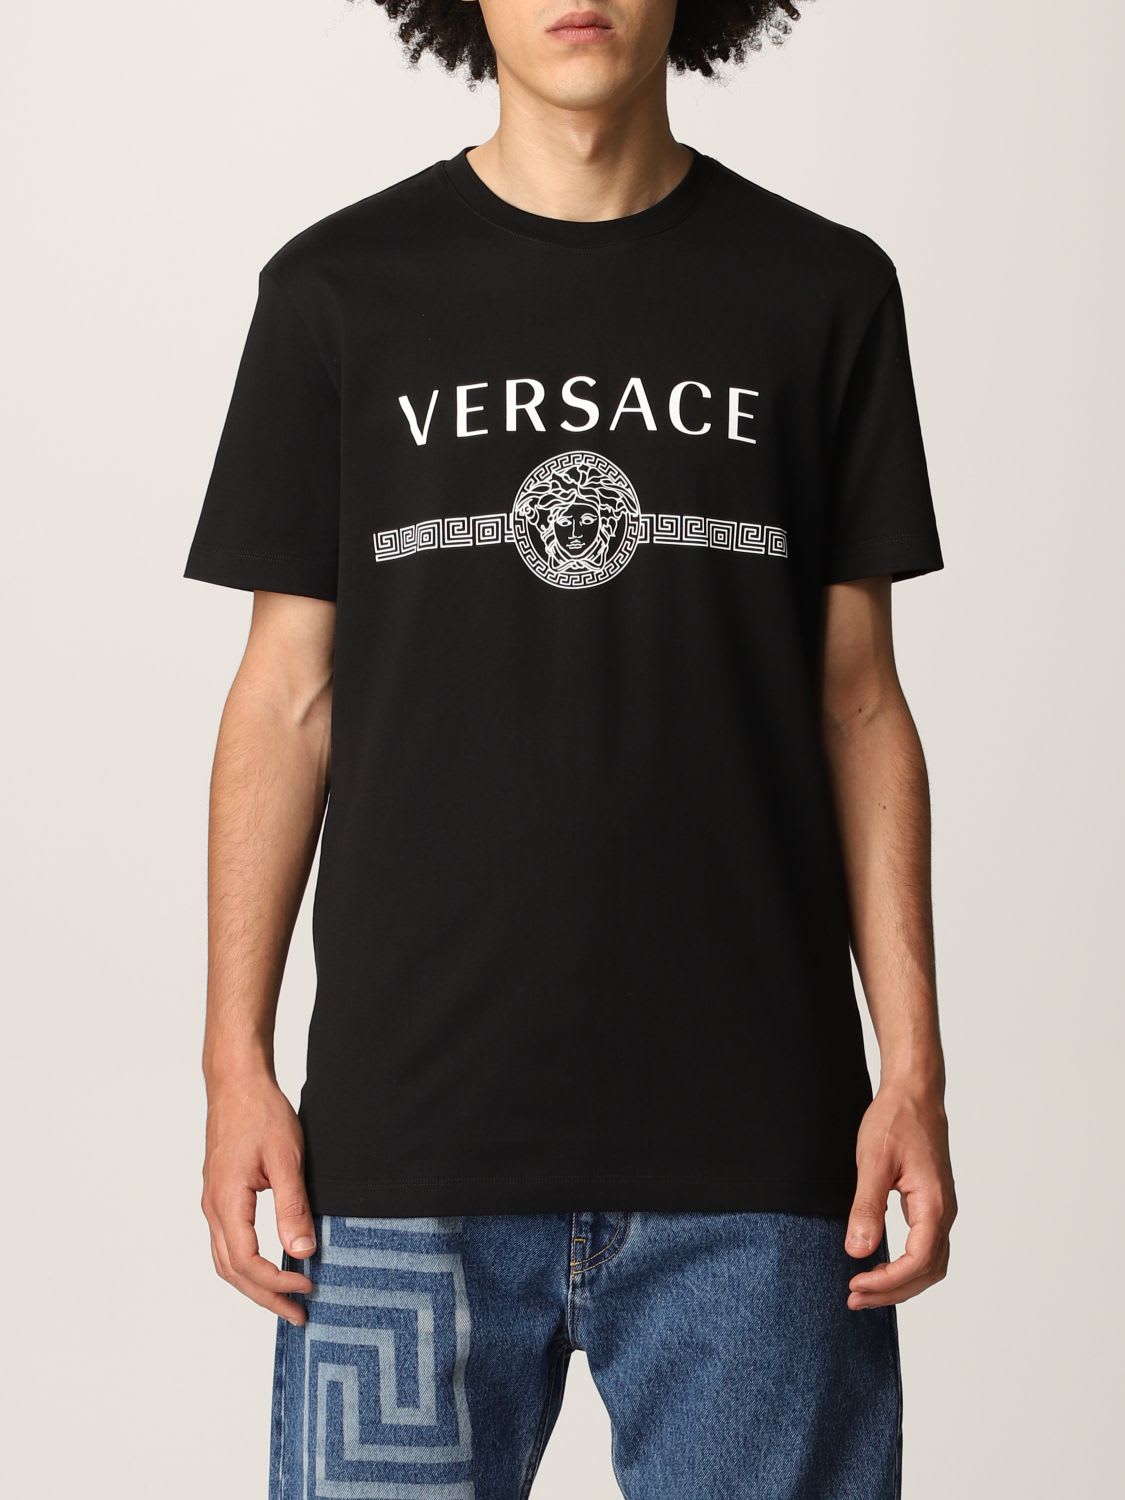 Versace T-shirt Versace Cotton T-shirt With Medusa